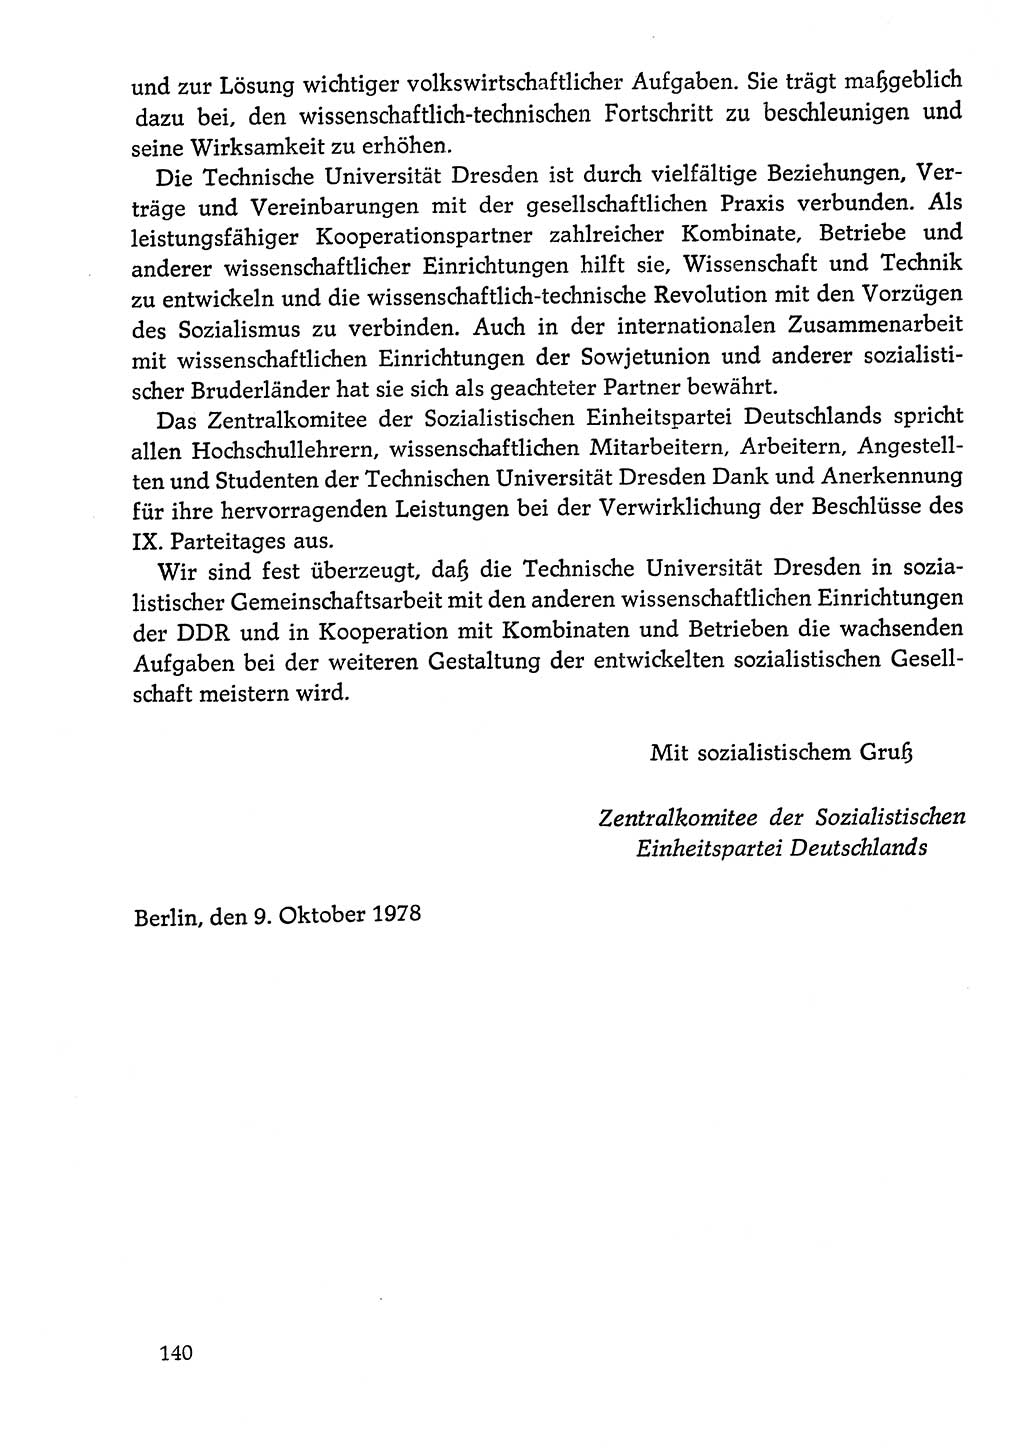 Dokumente der Sozialistischen Einheitspartei Deutschlands (SED) [Deutsche Demokratische Republik (DDR)] 1978-1979, Seite 140 (Dok. SED DDR 1978-1979, S. 140)